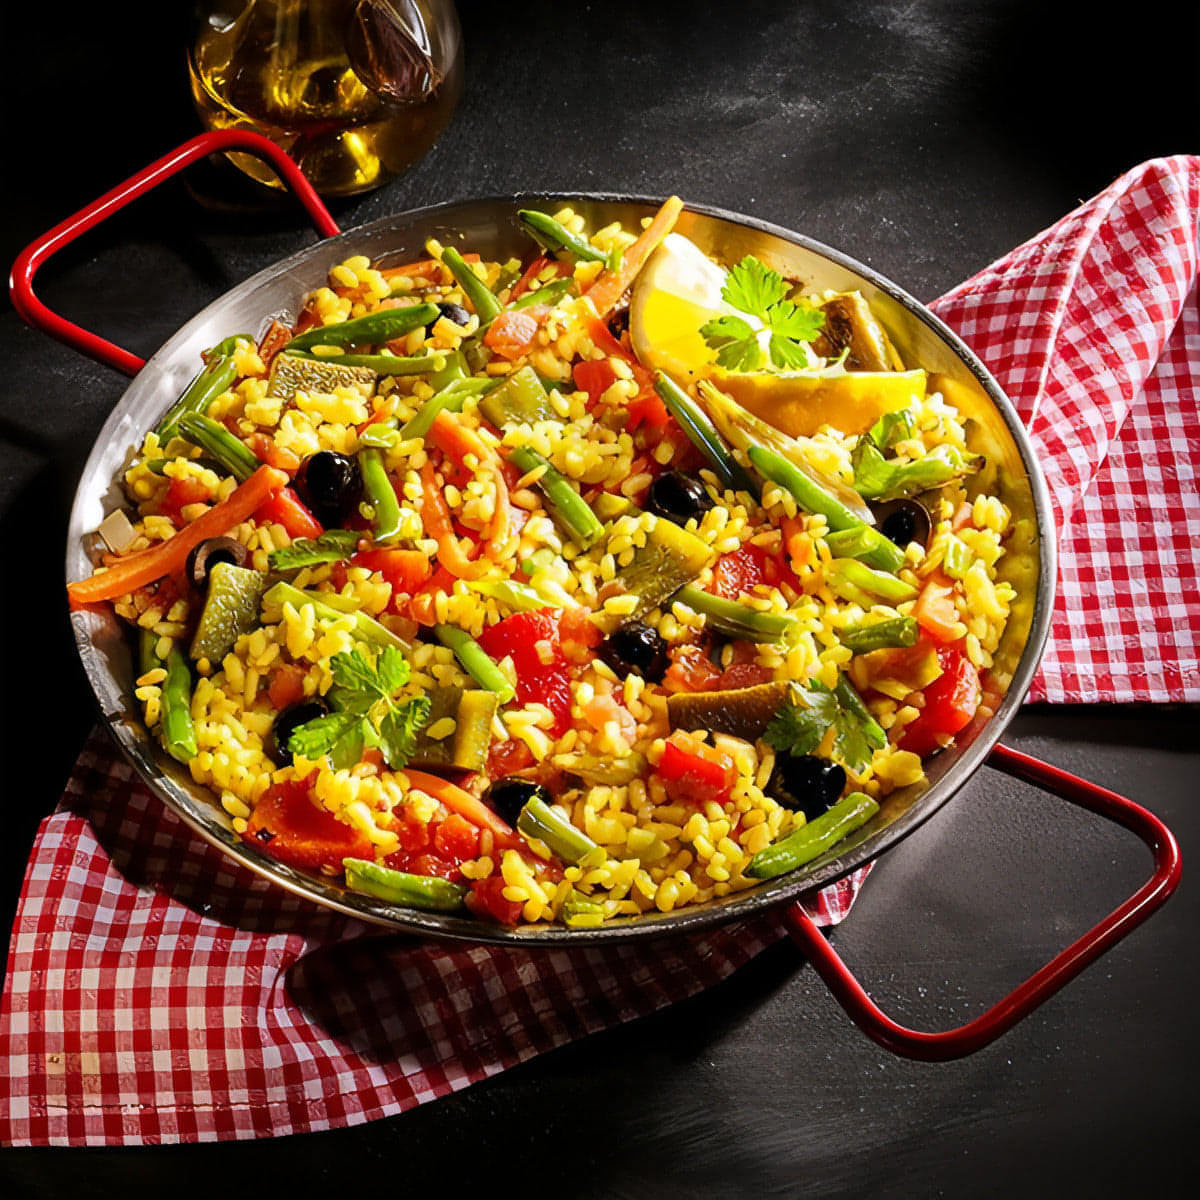 How to make Paella Vegetariana